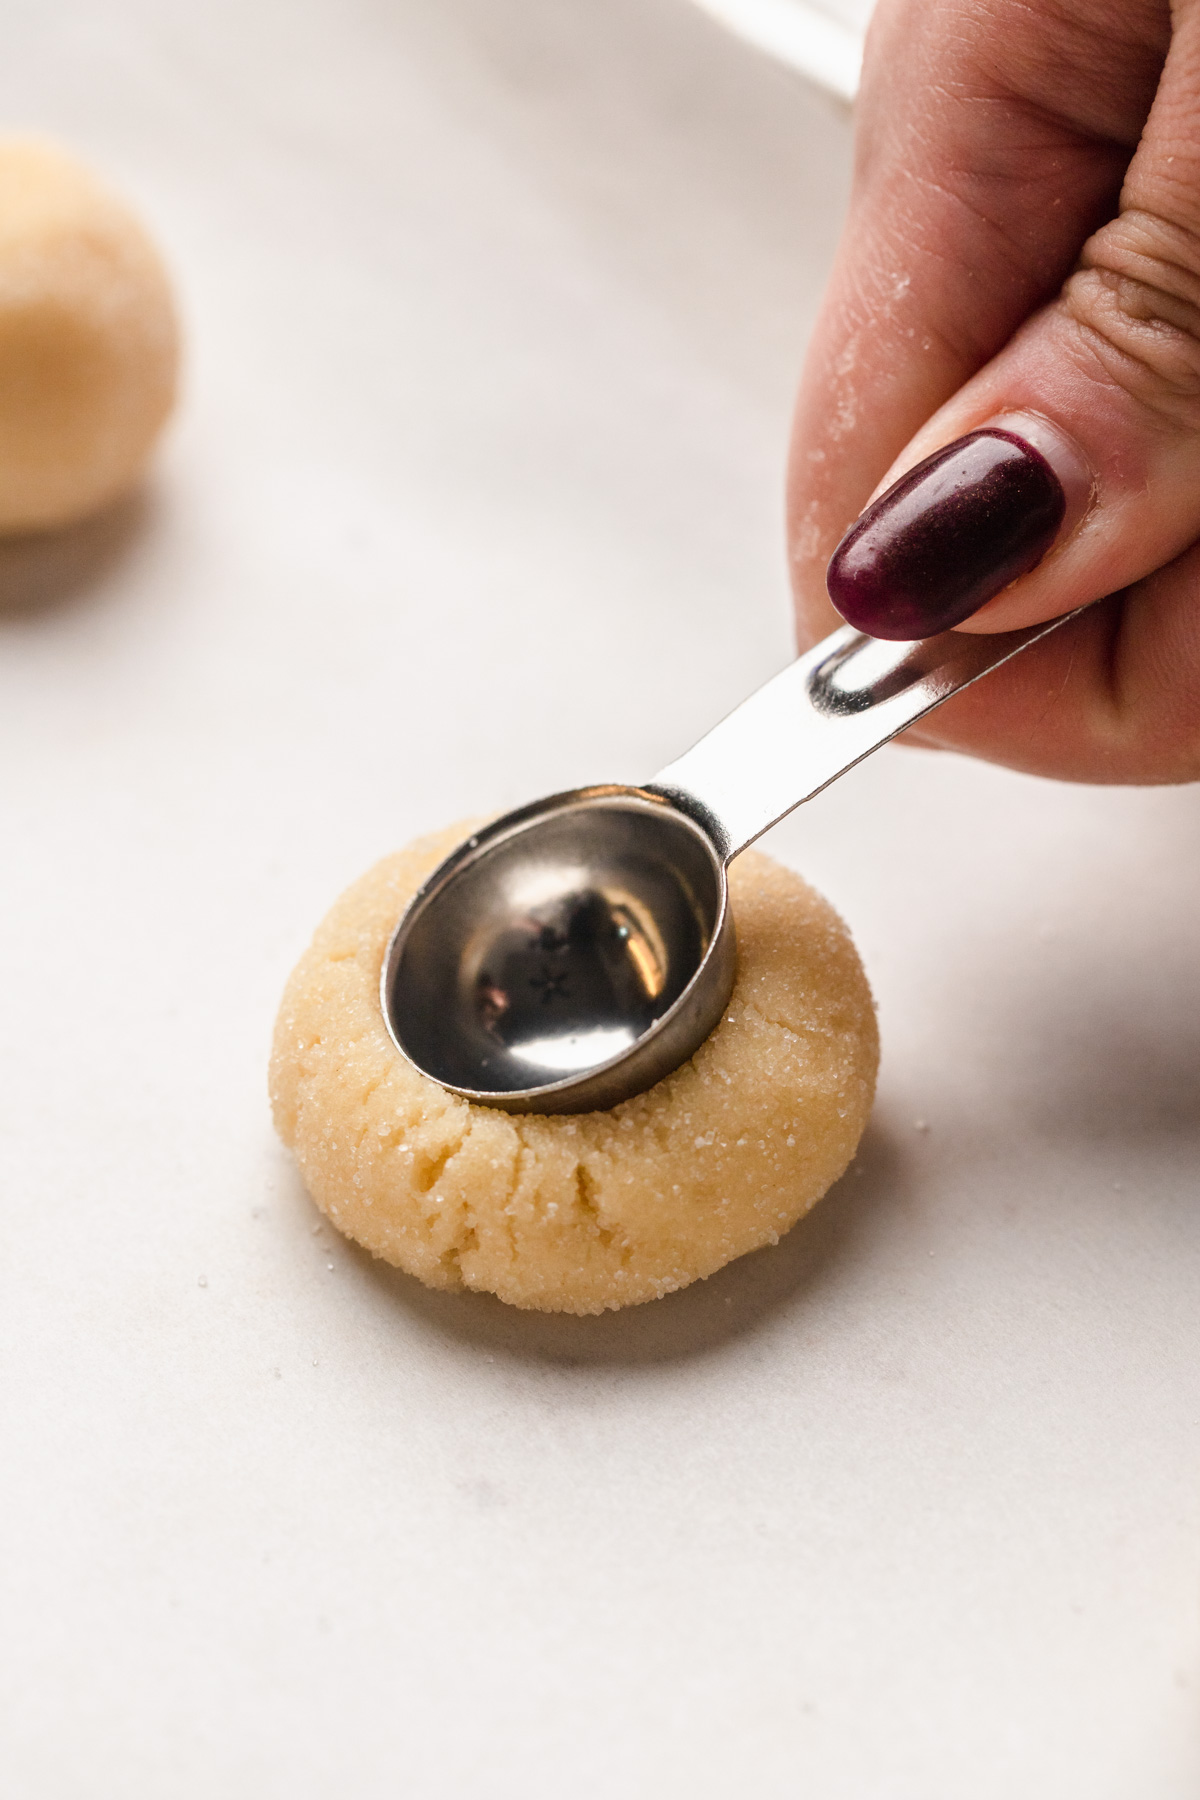 Pressing a teaspoon into a cookie dough ball.